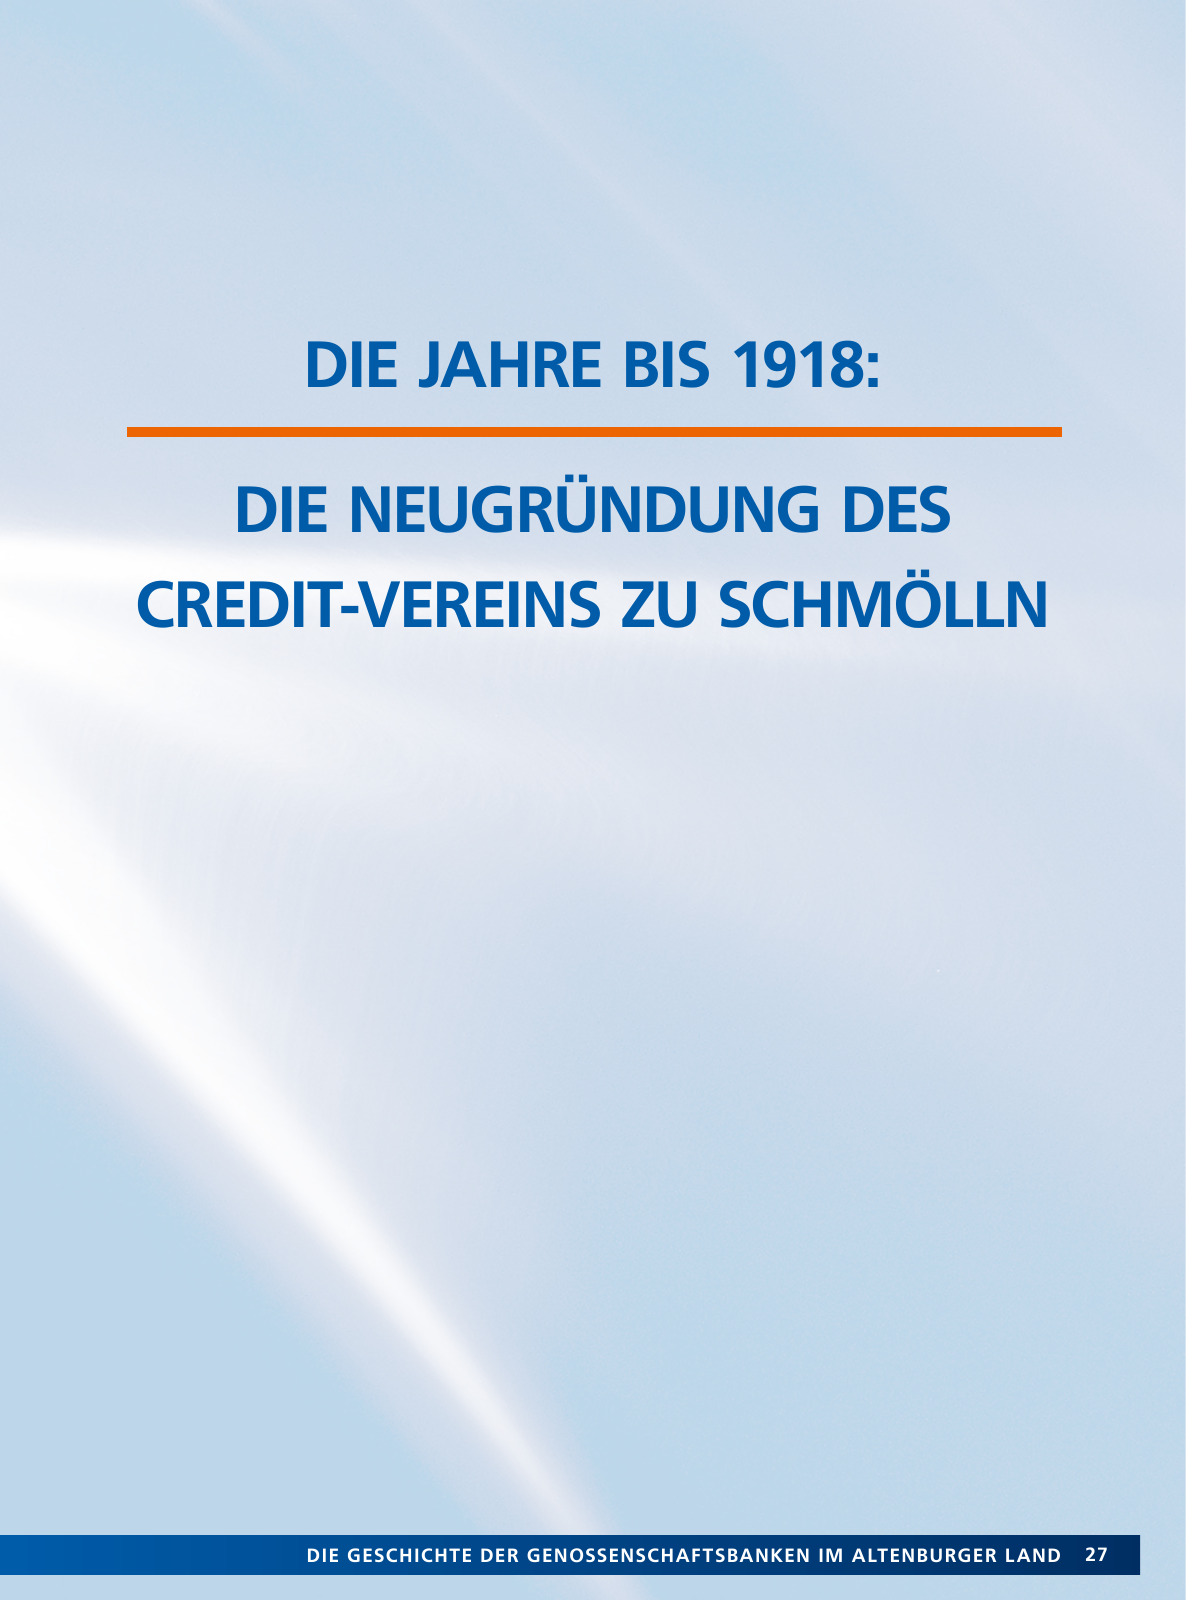 Vorschau Von der Idee, sich selbst zu helfen – 150 Jahre genossenschaftliches Bankwesen im Altenburger Land Seite 27